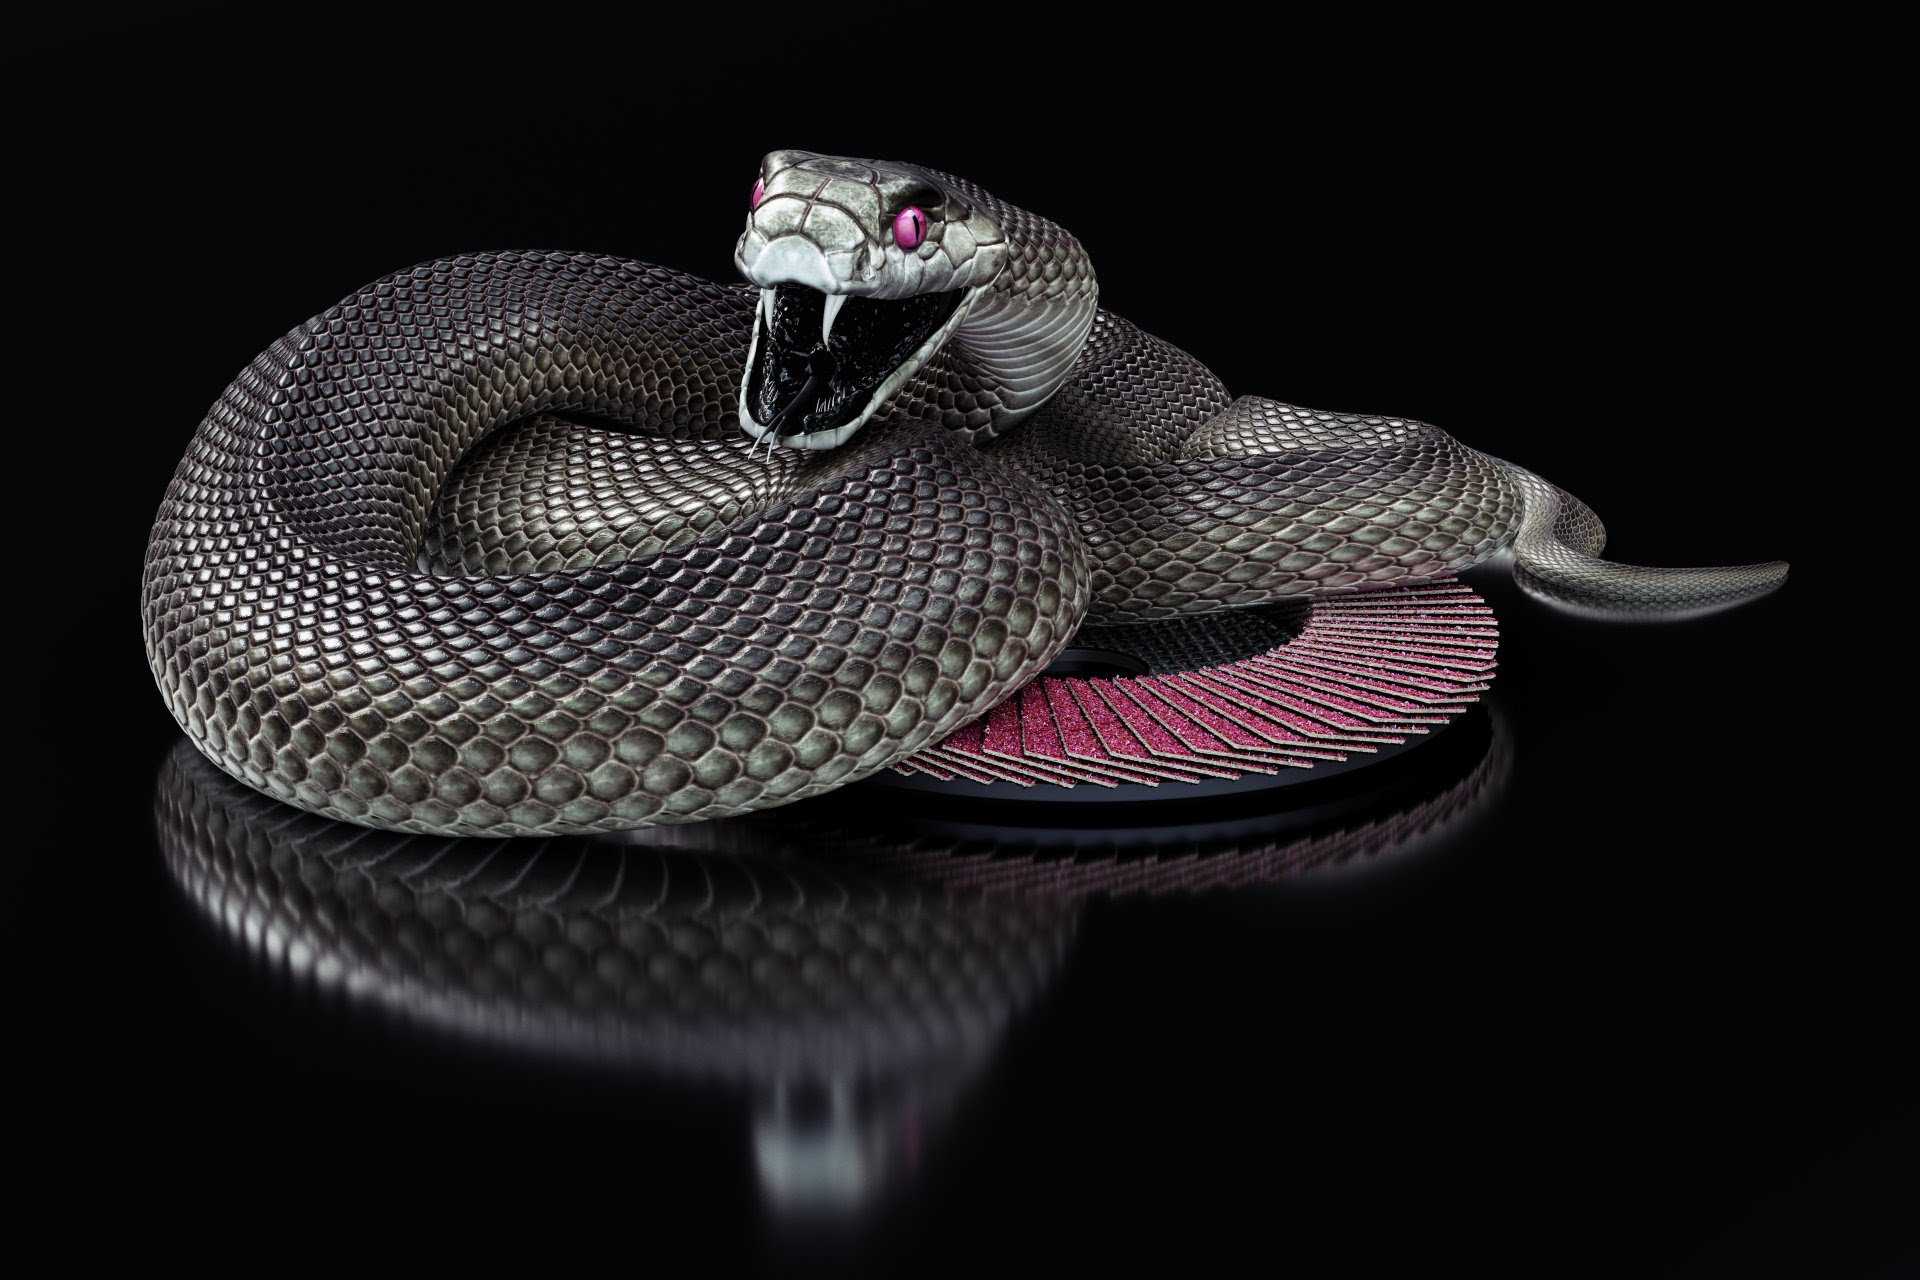 black cobra snake wallpaper Gallery